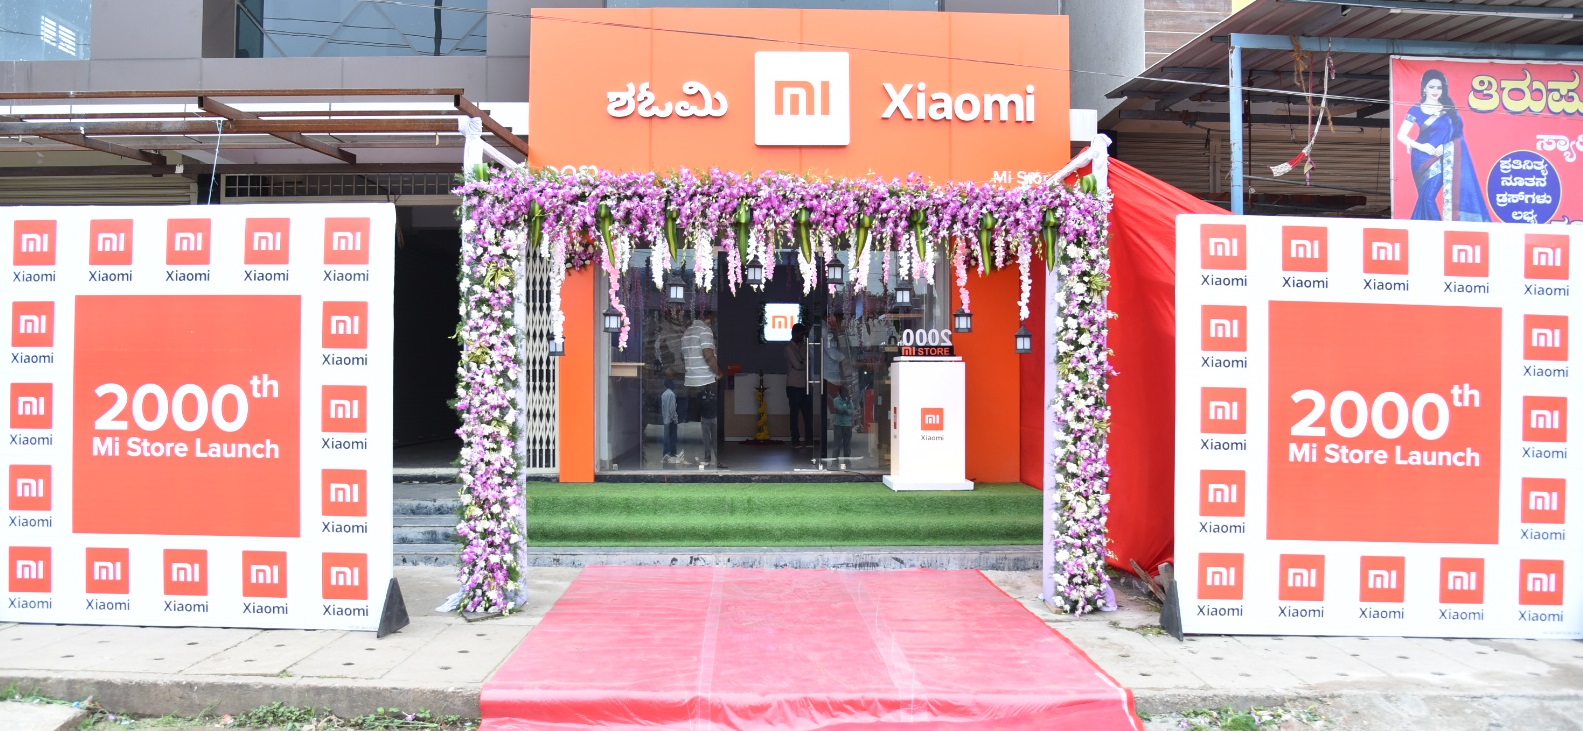 Xiaomi membuka Mi Store ke-2000 di India, bertujuan untuk membuka lebih dari 10.000 toko ritel pada akhir 2019 1